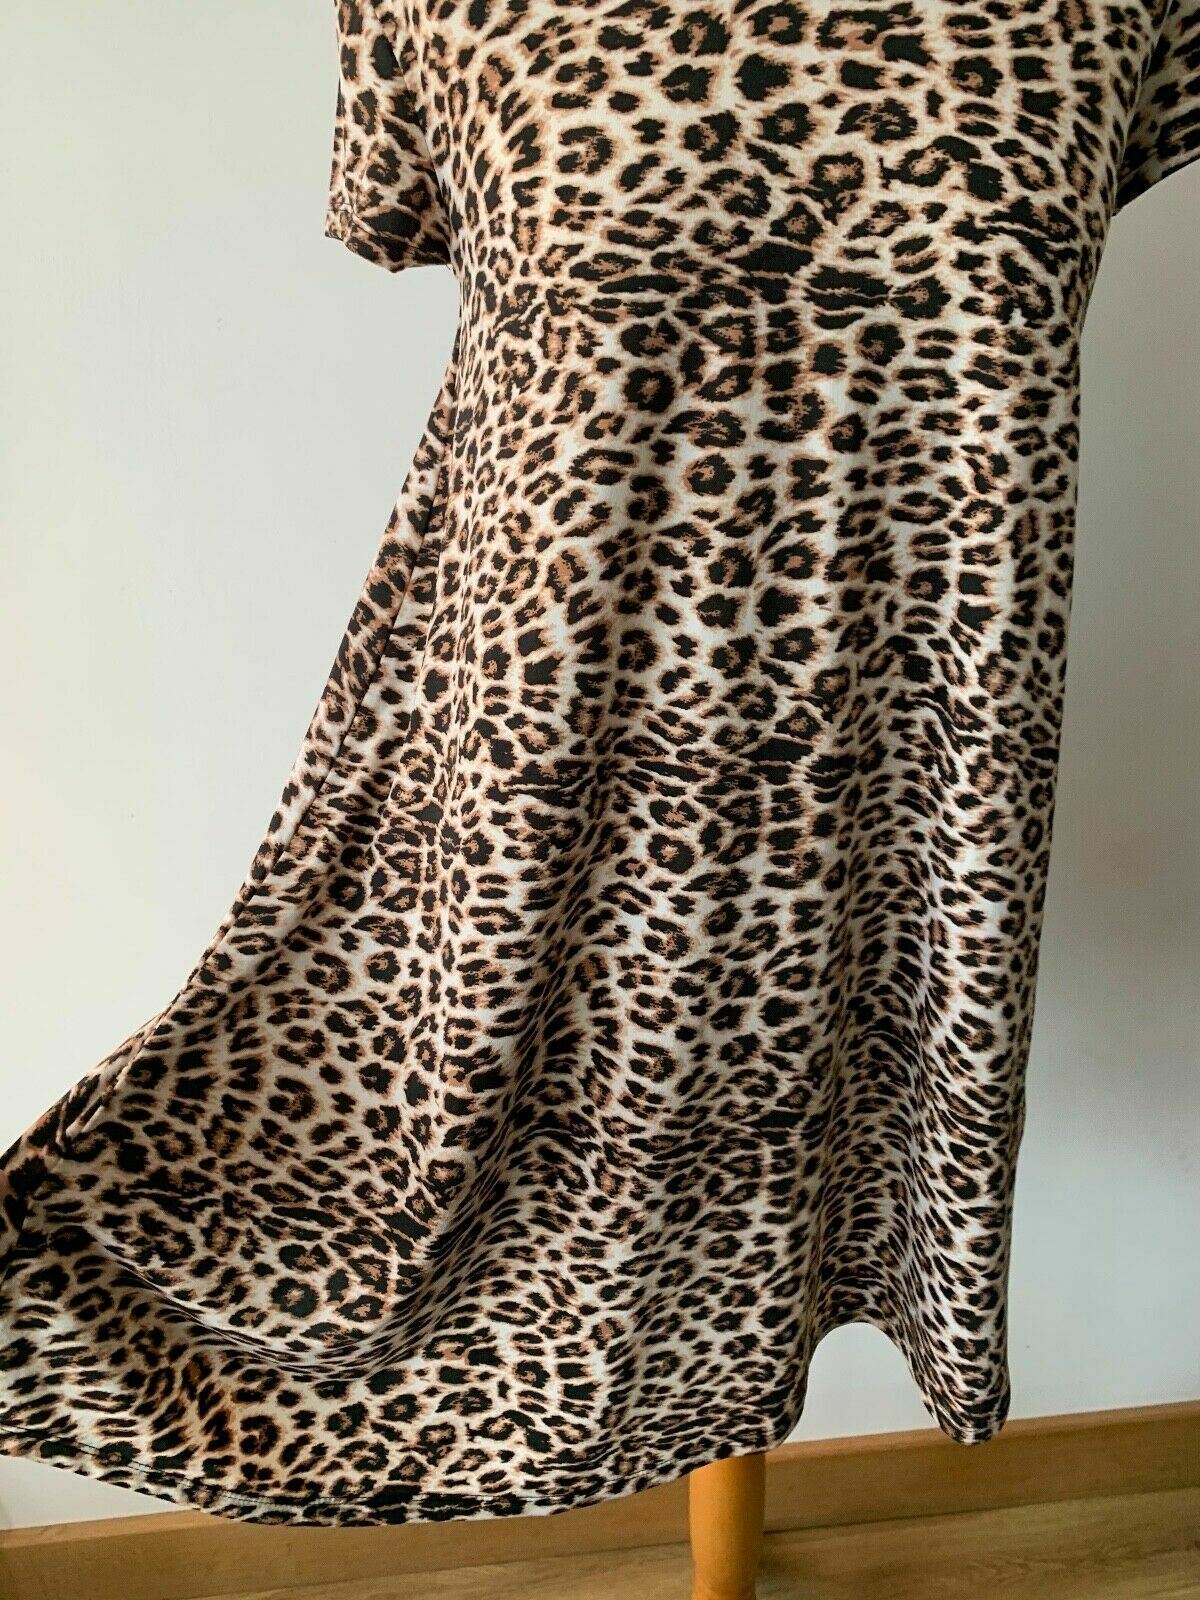 Brave Soul swing dress in leopard print Size S